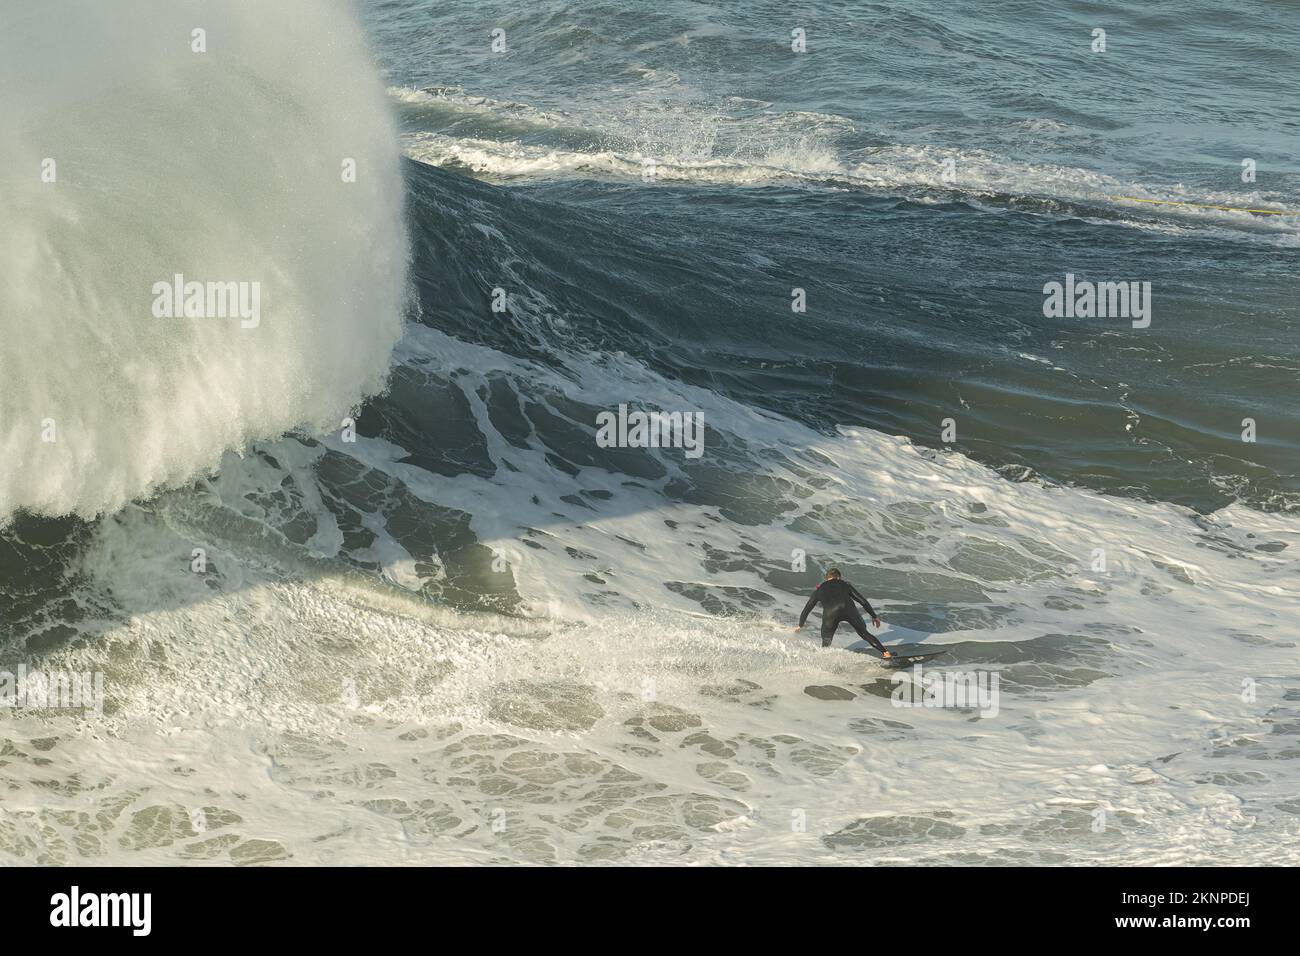 Tow-in Surf oder Big Wave Surf in Praia do Norte, Nazaré, Portugal. Stockfoto